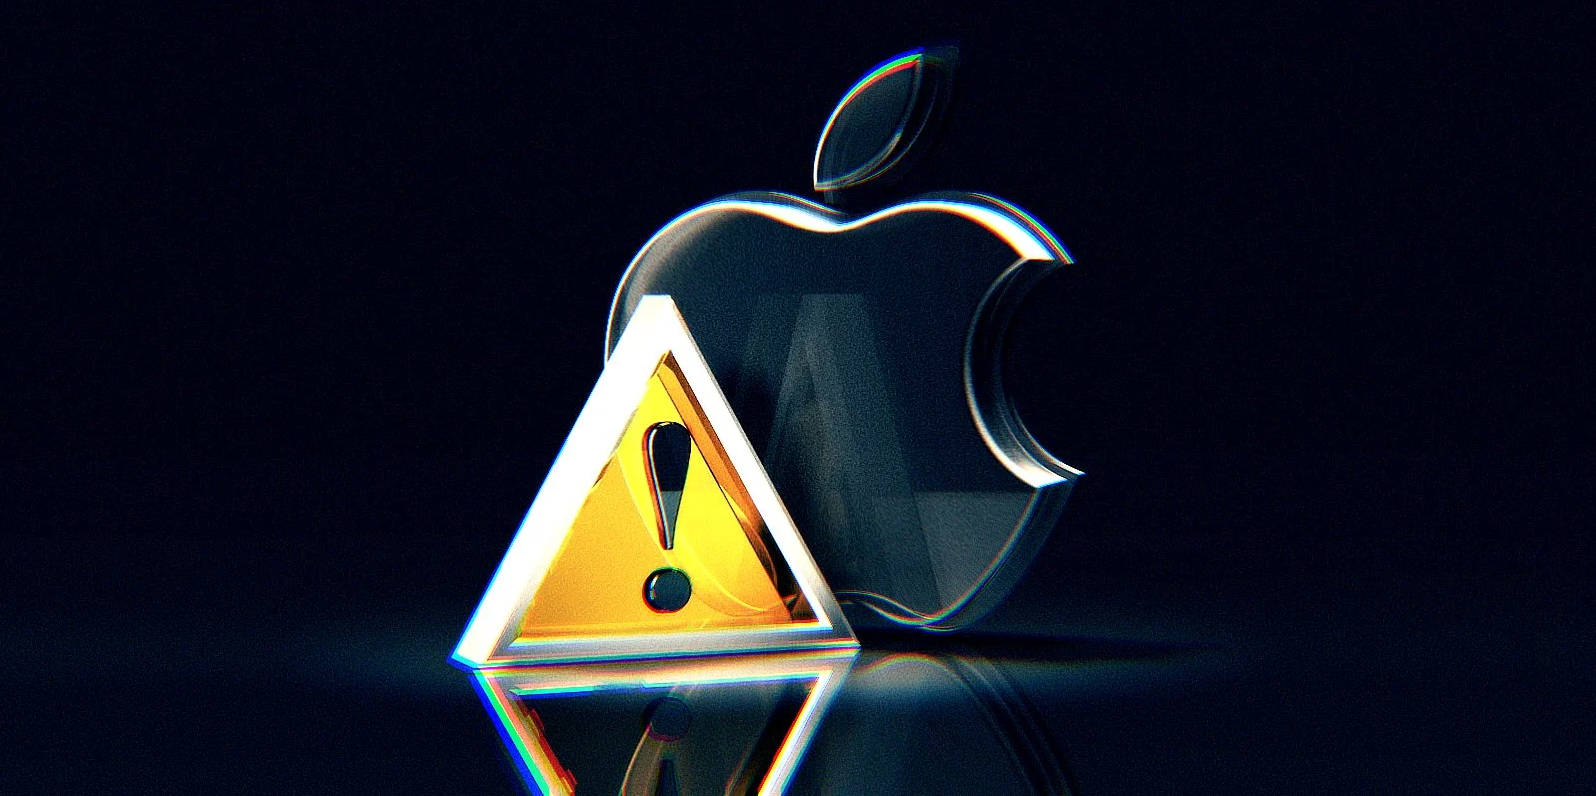 Apple corrige falhas de segurança graves que afetavam dispositivos desde 2015